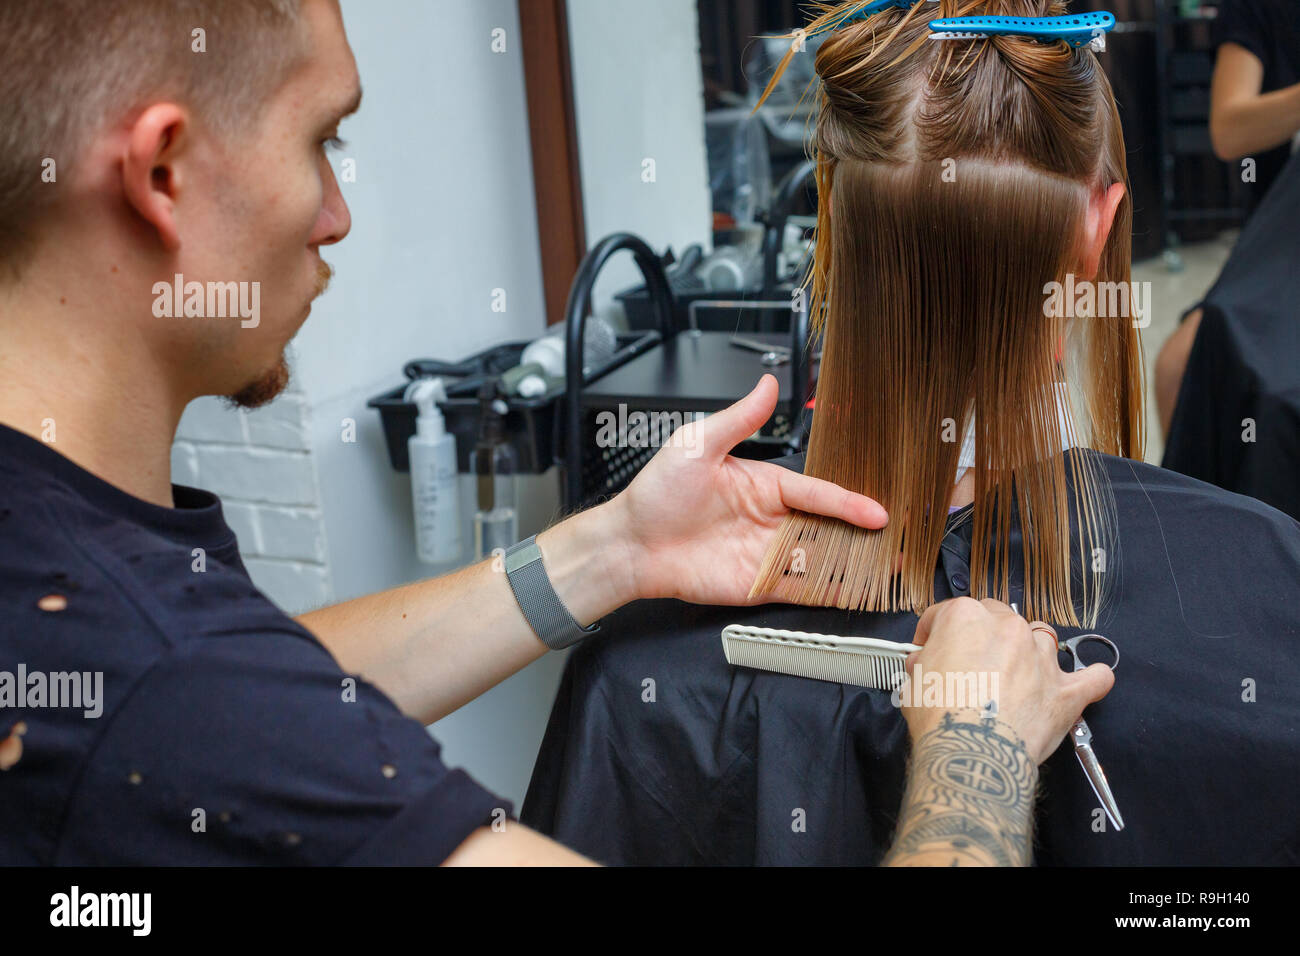 Haare Schneiden In Der Friseur Stockfotografie Alamy